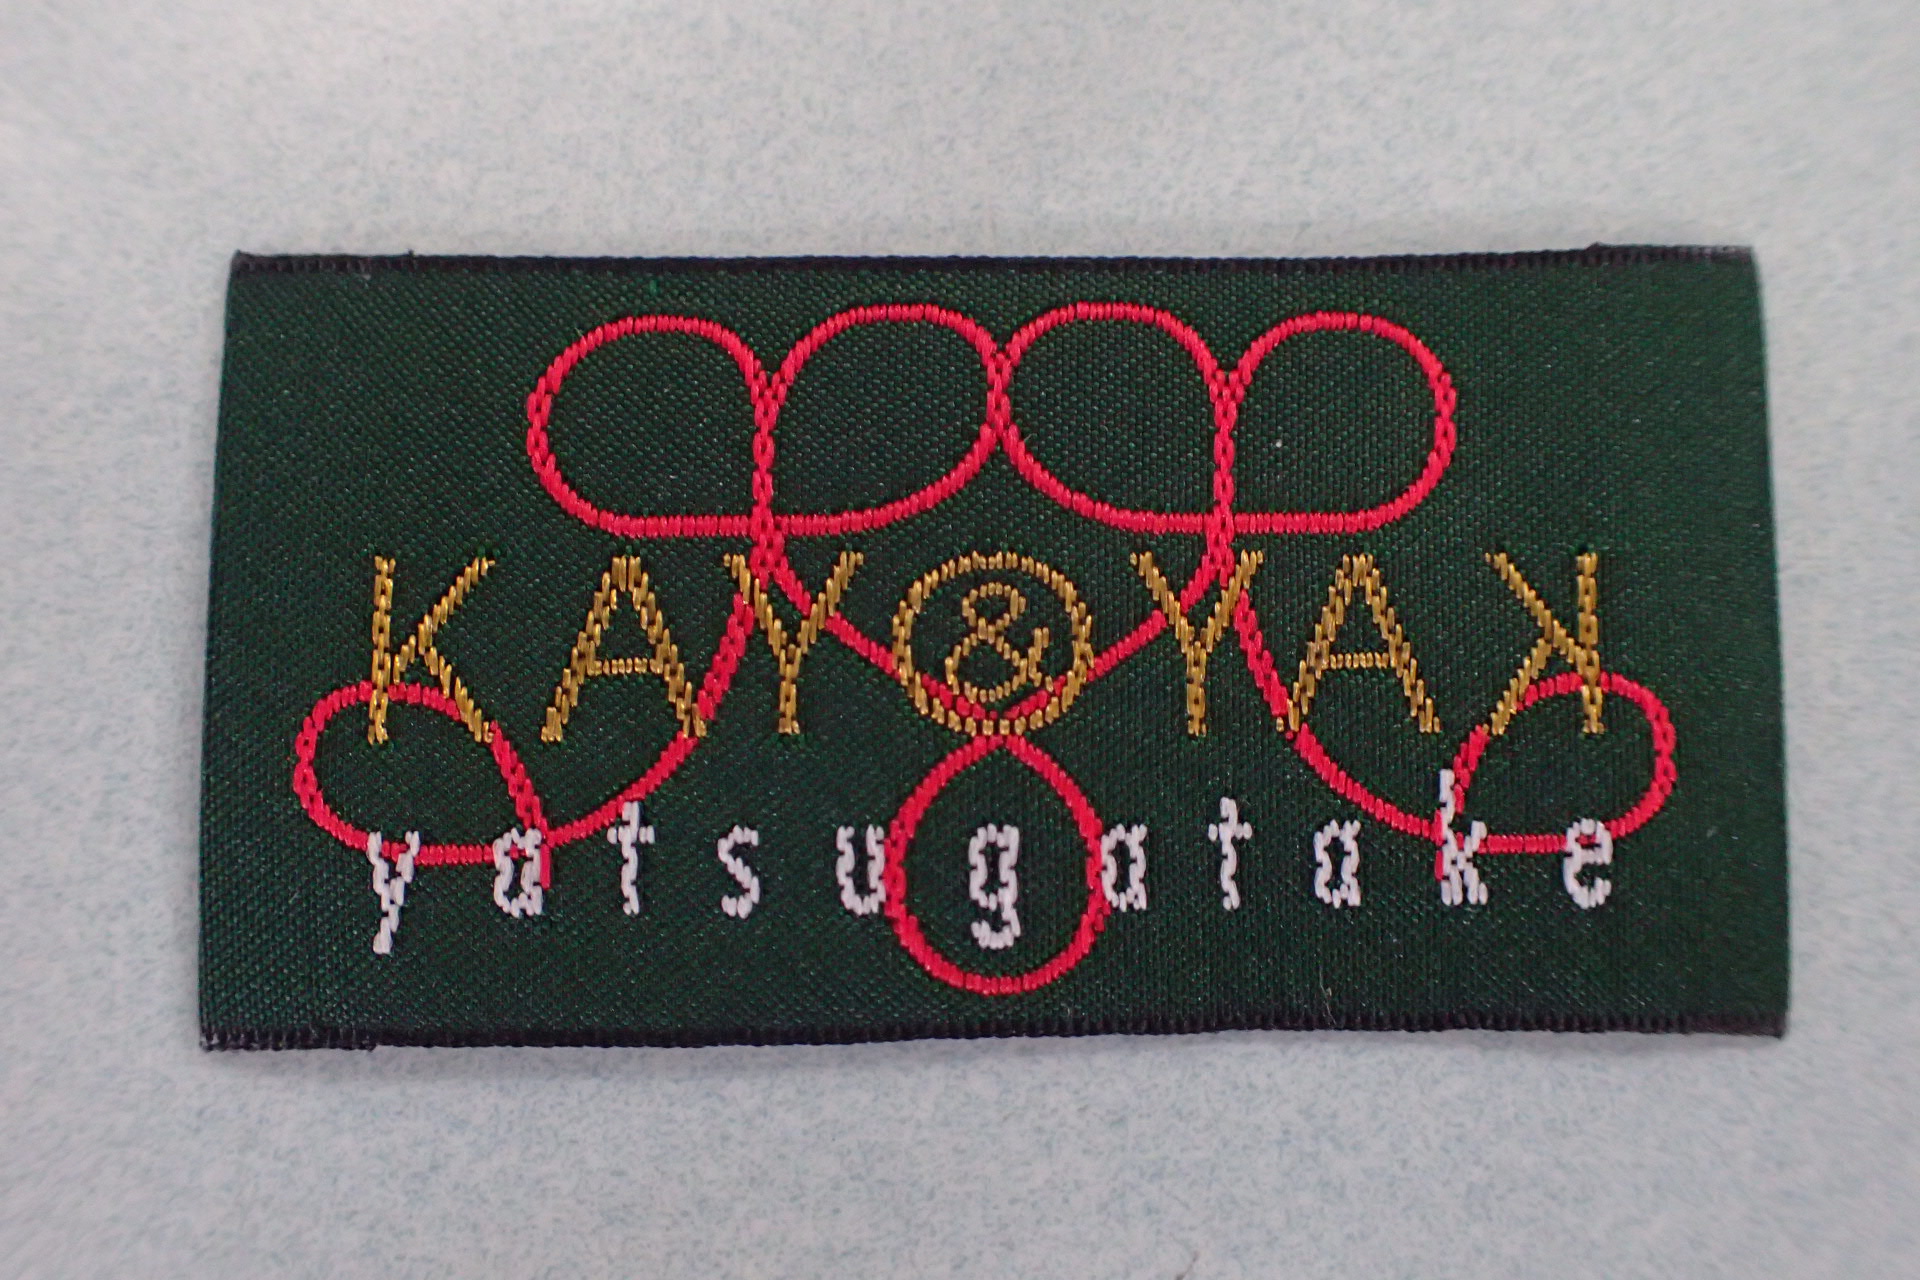 シャトル裏朱子織りの織りネームの制作例です。